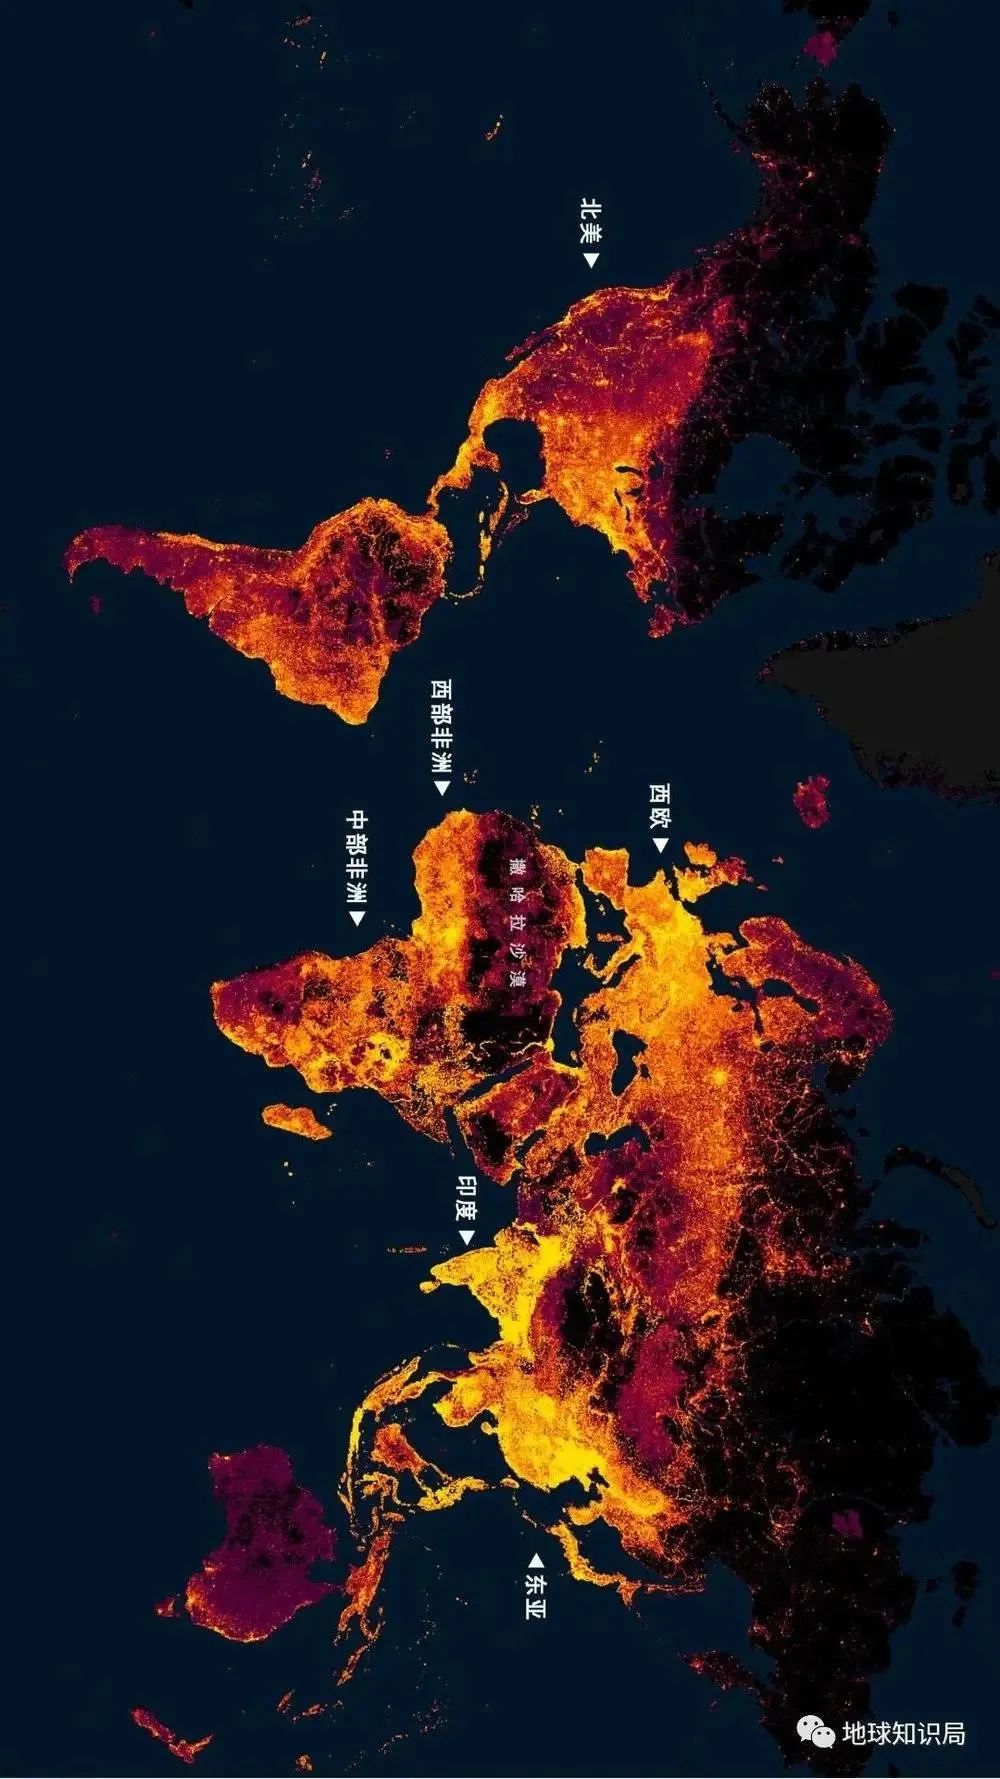 图/data.humdata.org，如果以灯光效果来表示人口密度，西非地区也算是一片较亮的区域